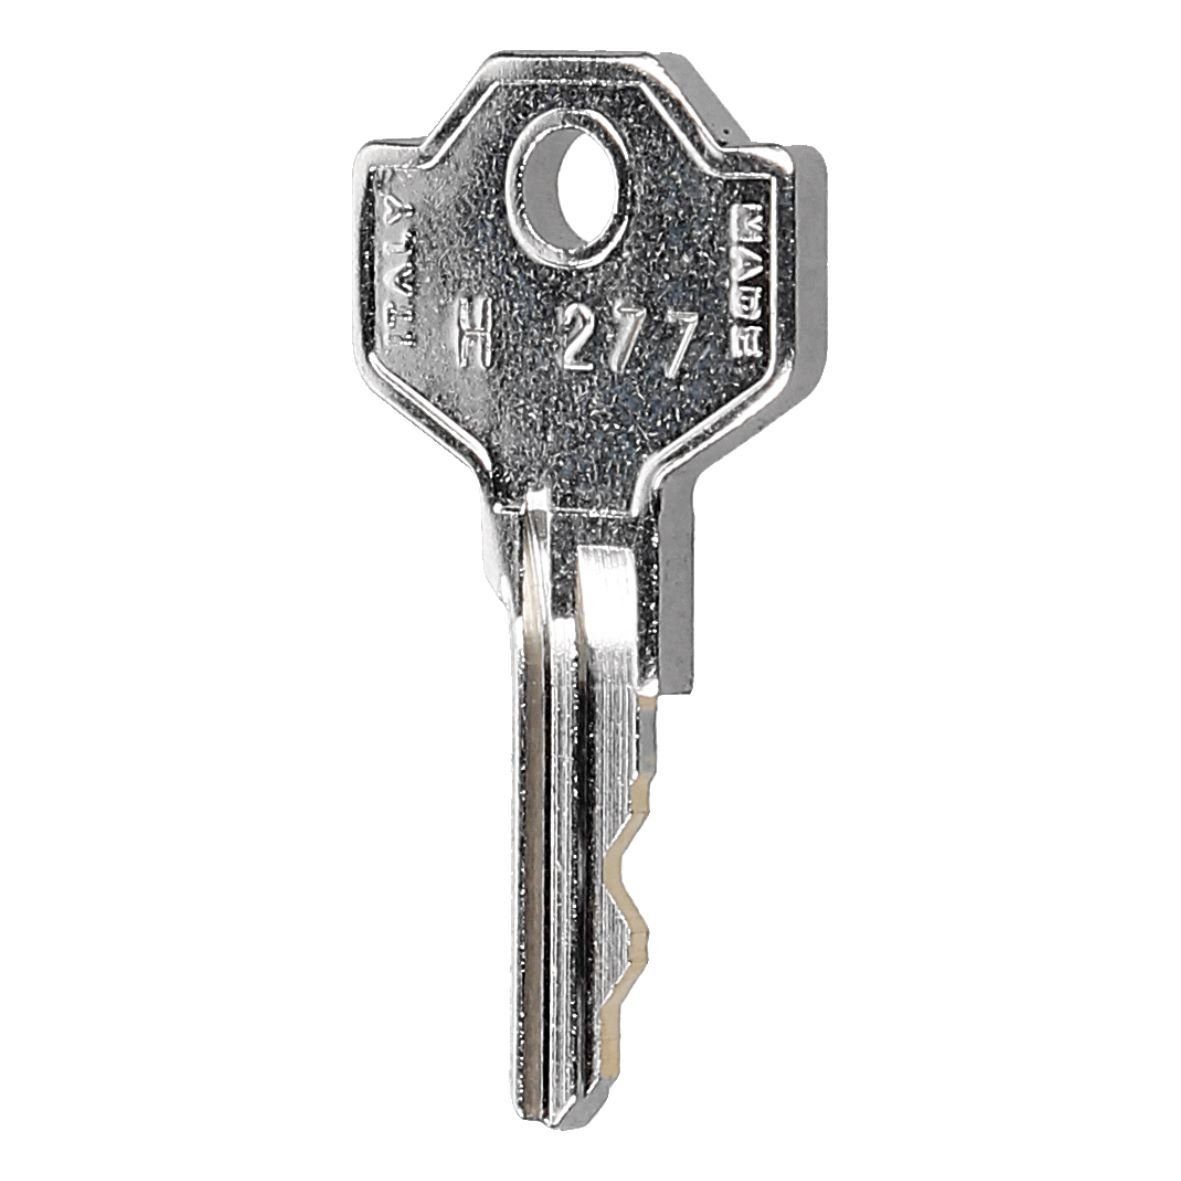 LIEBHERR, H277 Gefriergerät Kühlschrank wie / 7042961 easyPART Schlüssel Einlegeboden LIEBHERR